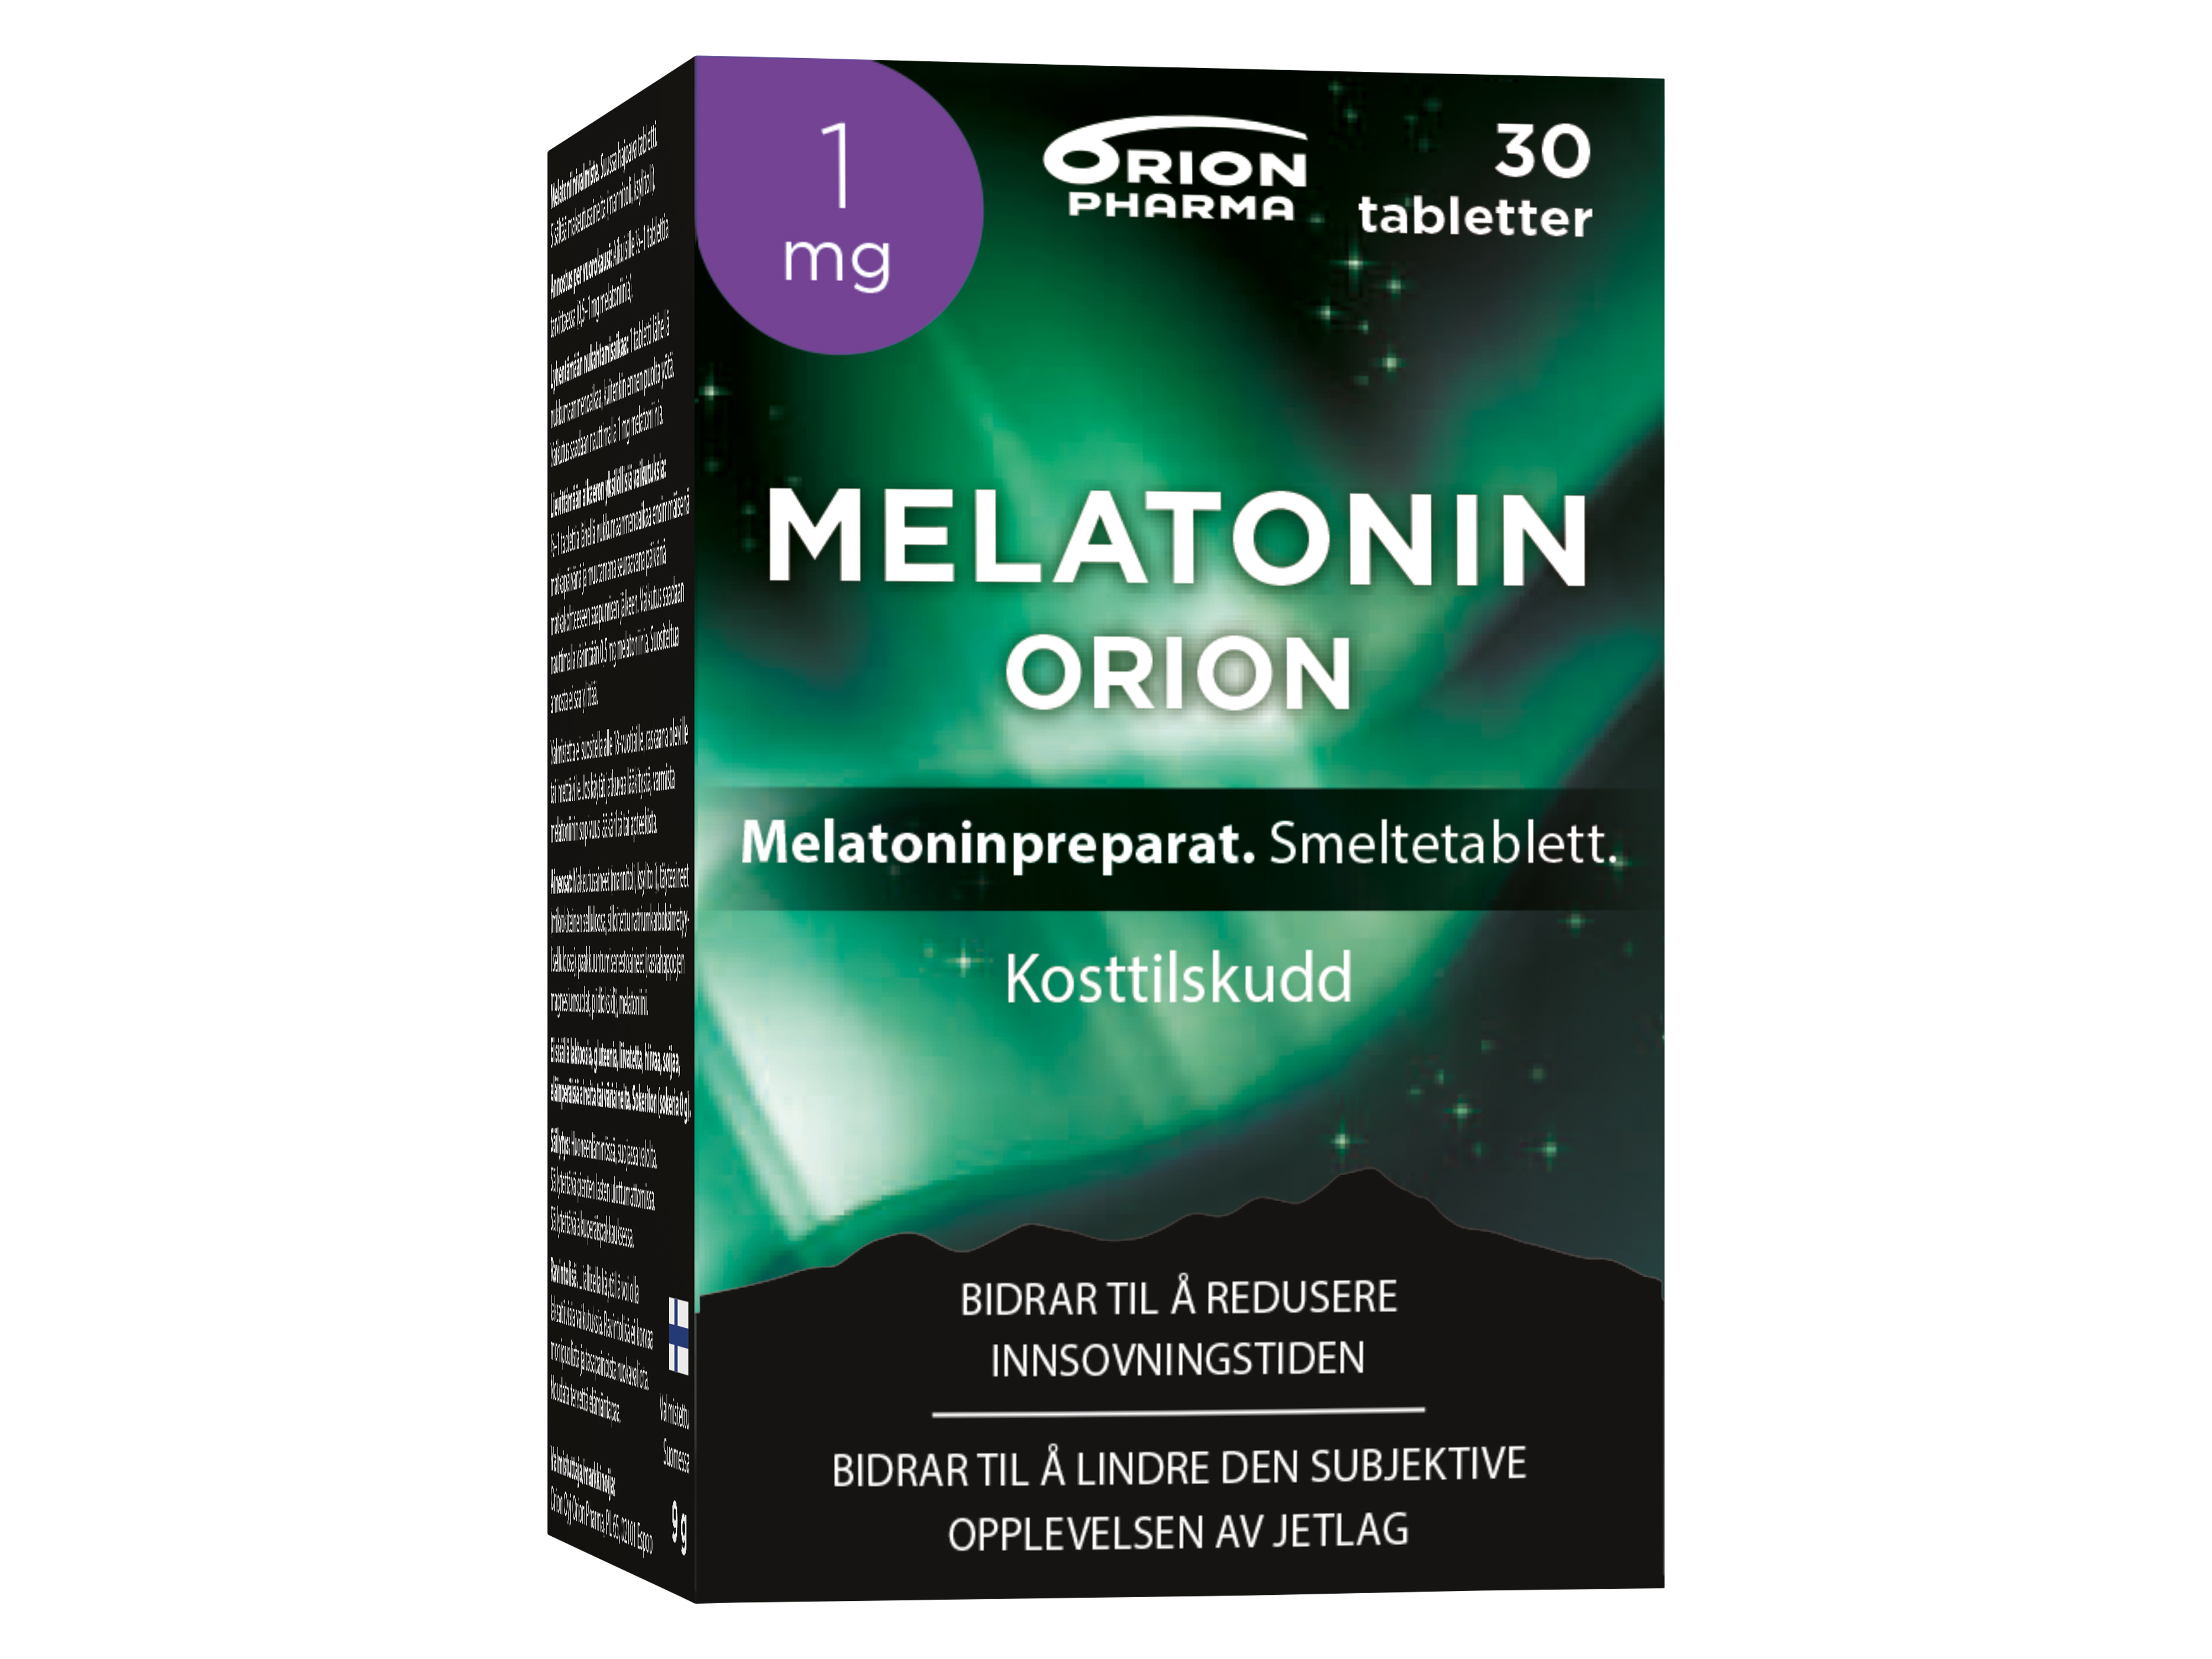 Melatonin Orion Smeltetablett 1mg, 30 tabletter